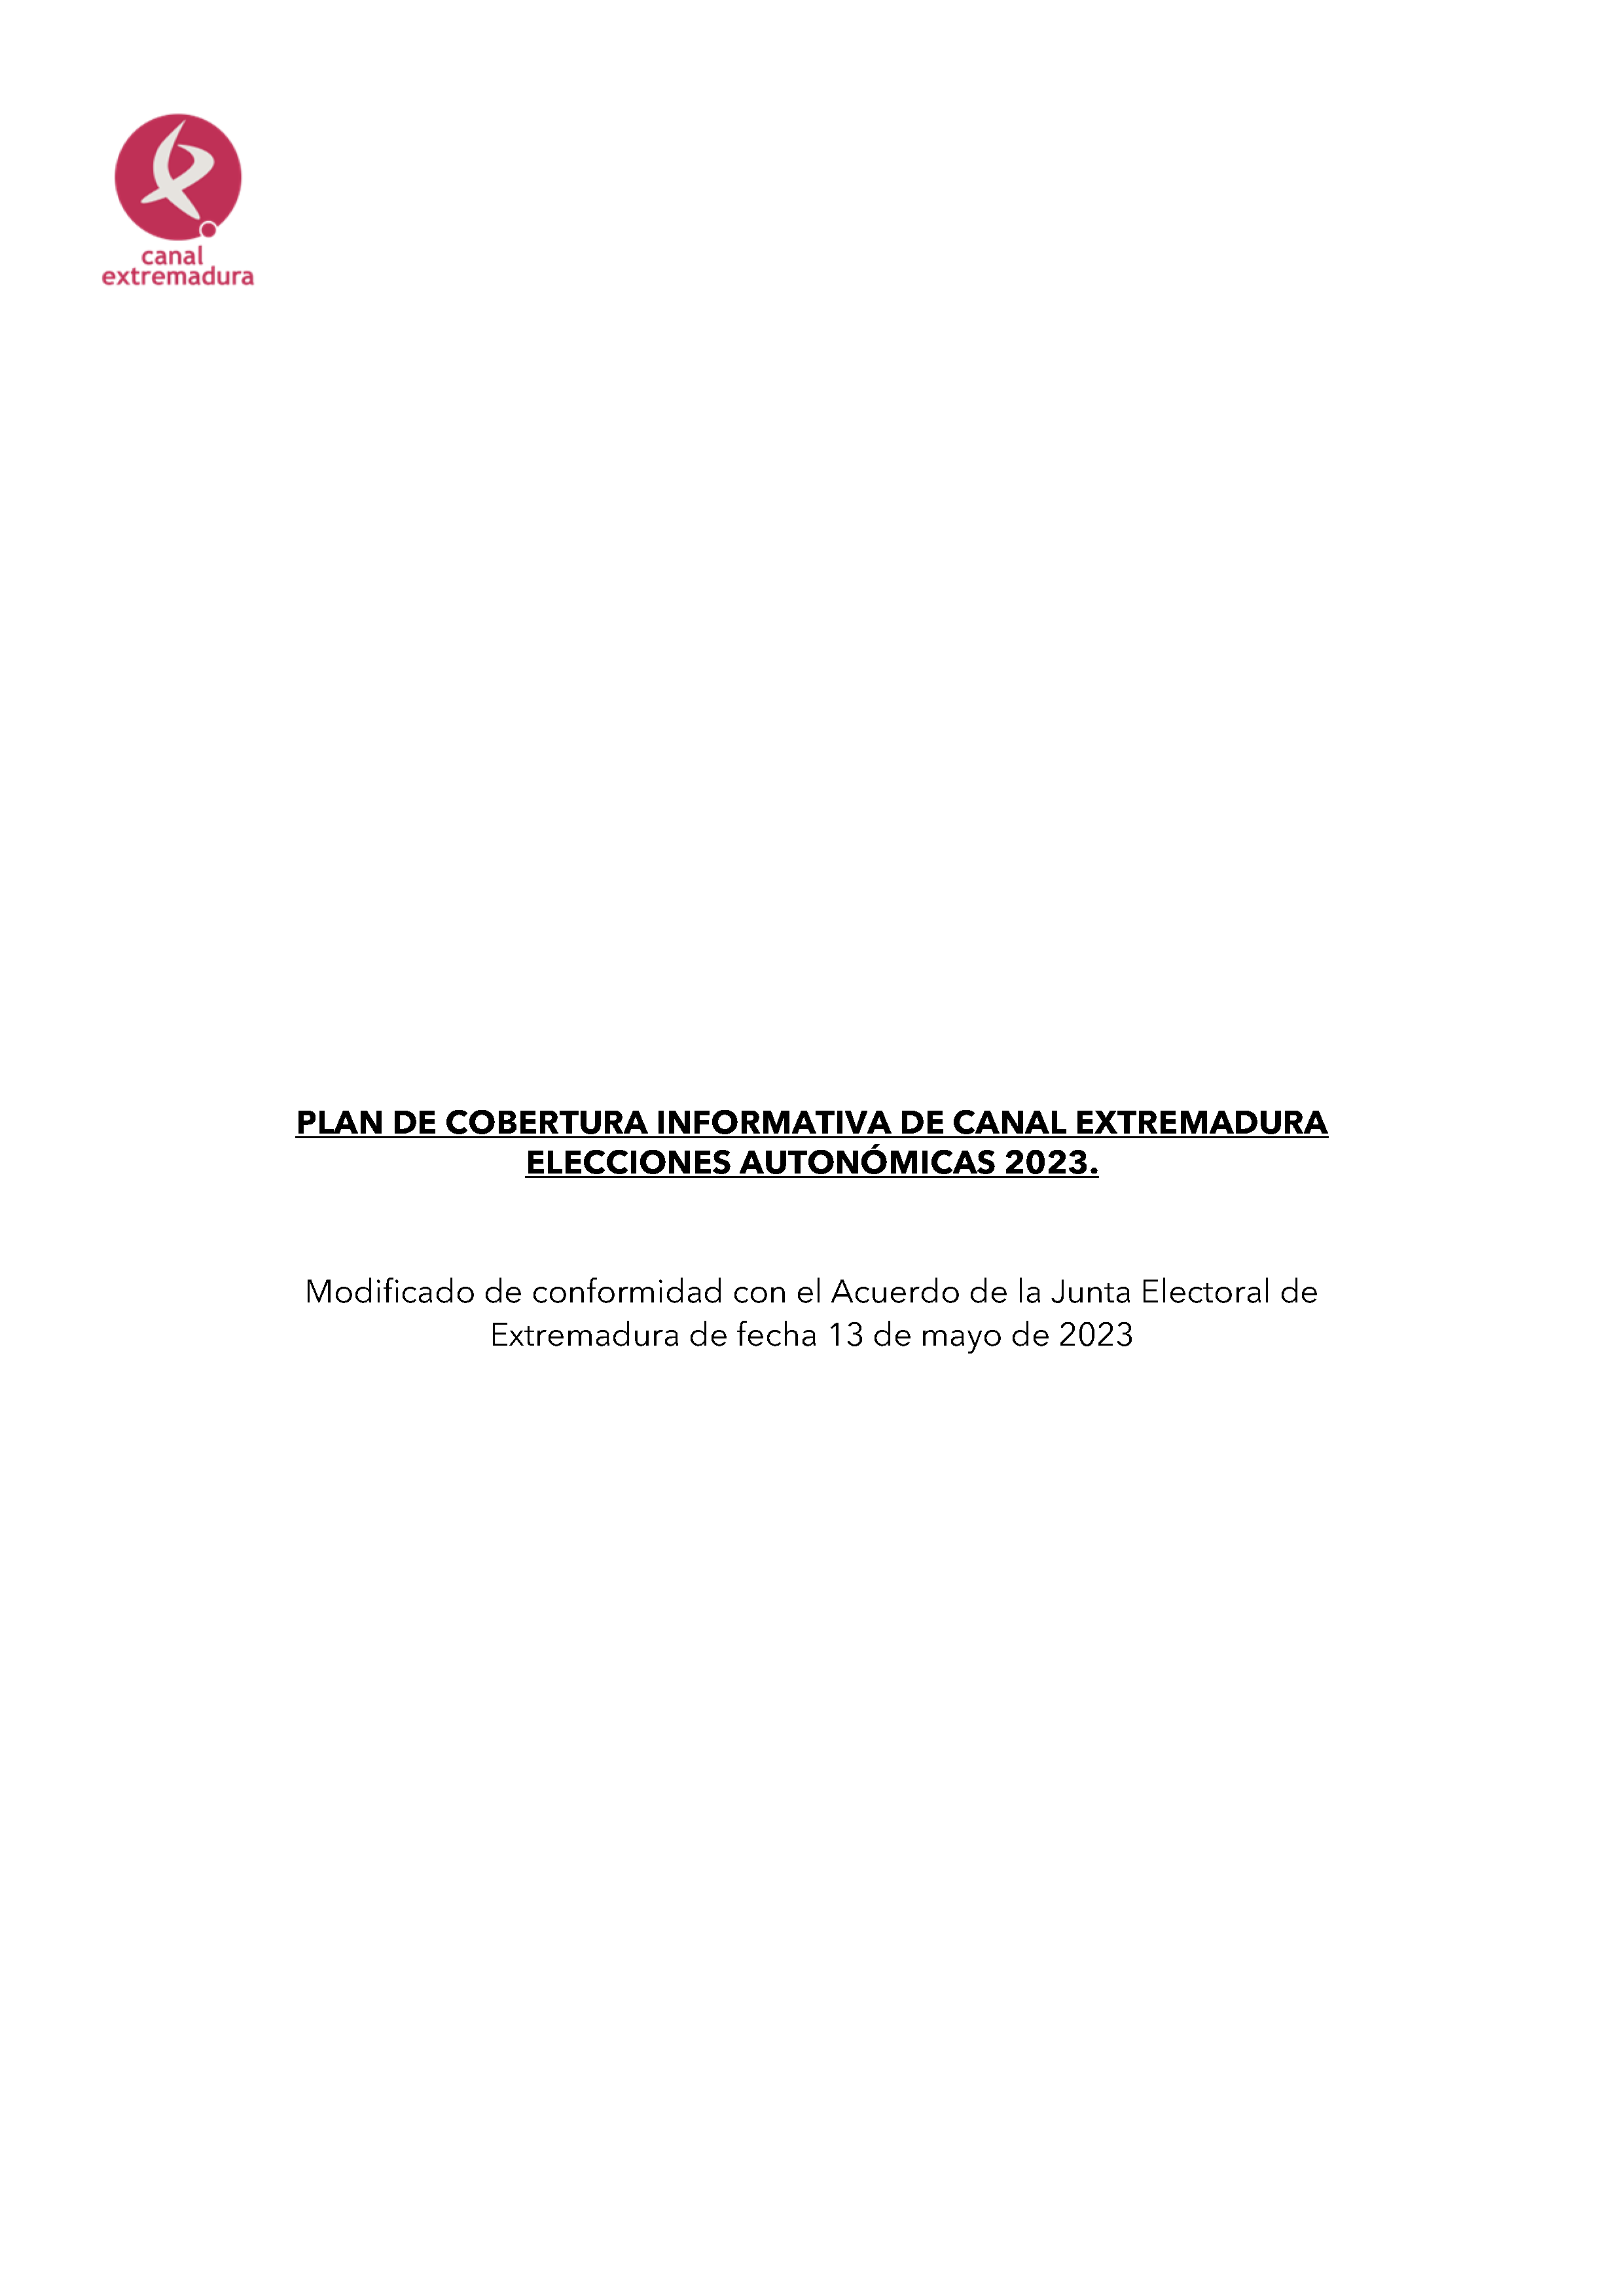 PLAN DE COBERTURA INFORMATIVA DE CANAL EXTREMADURA ELECCIONES AUTONÓMICAS 2023. Pag 1